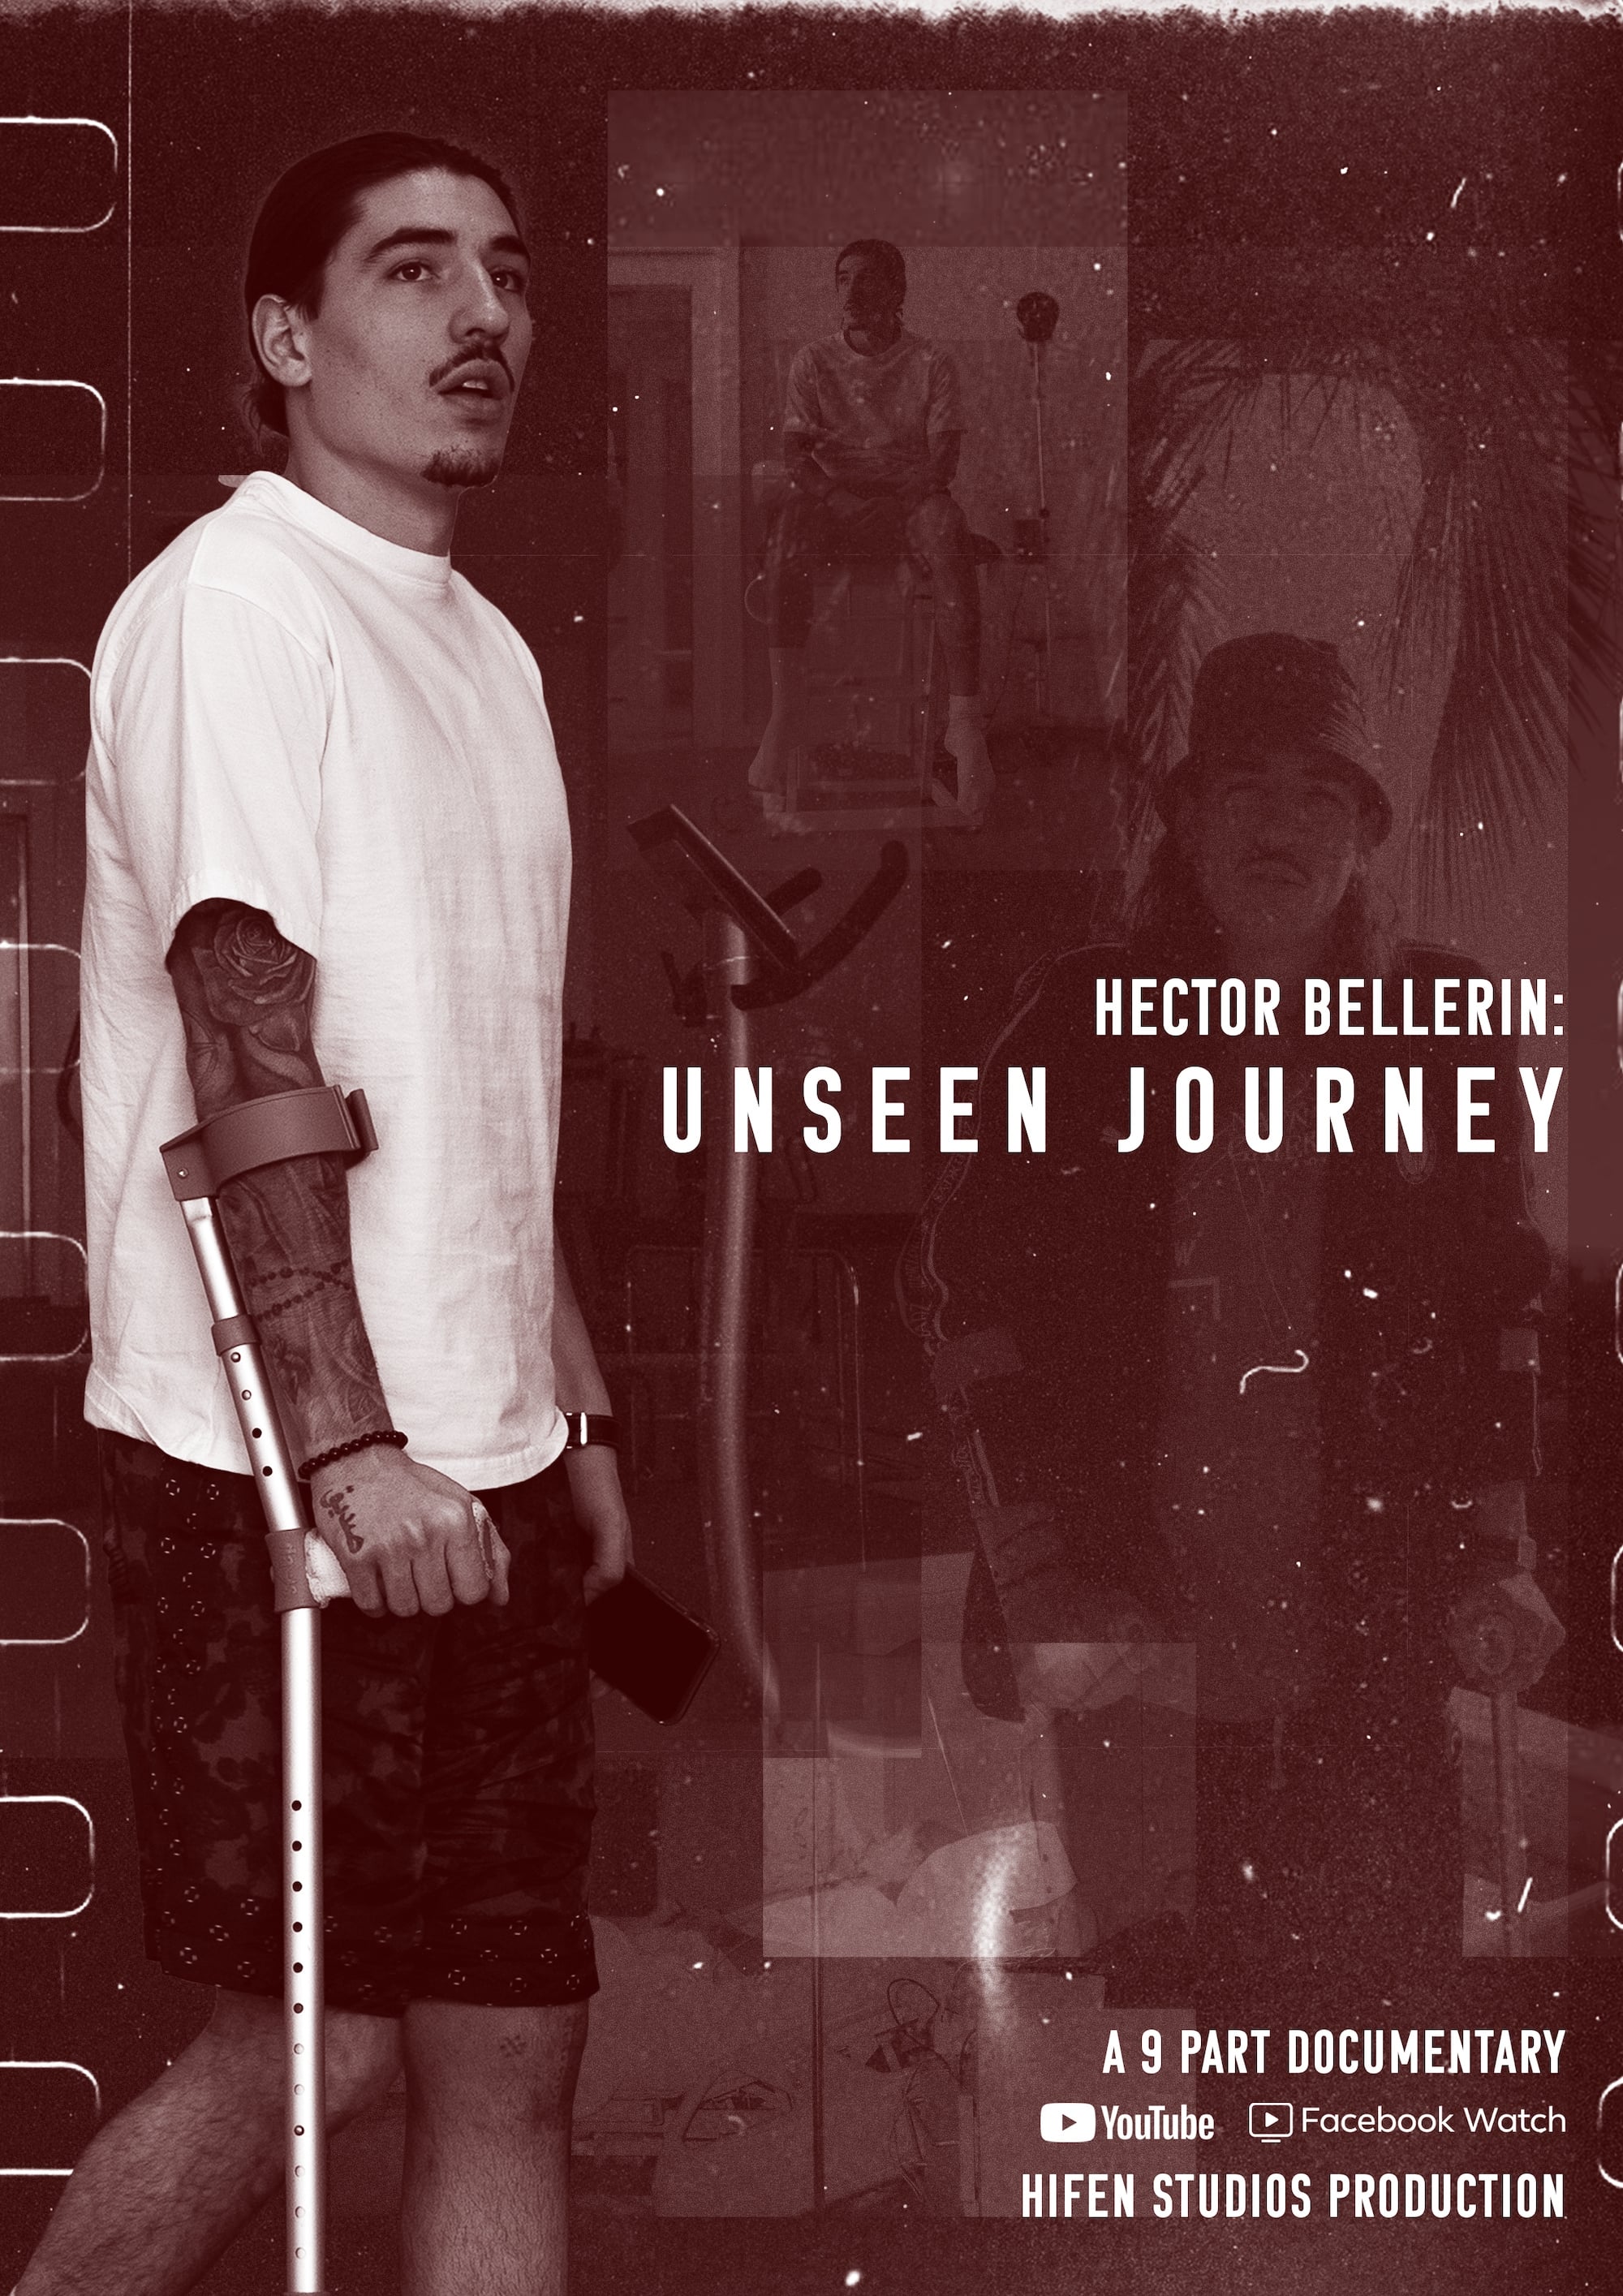 Héctor Bellerín: Unseen Journey